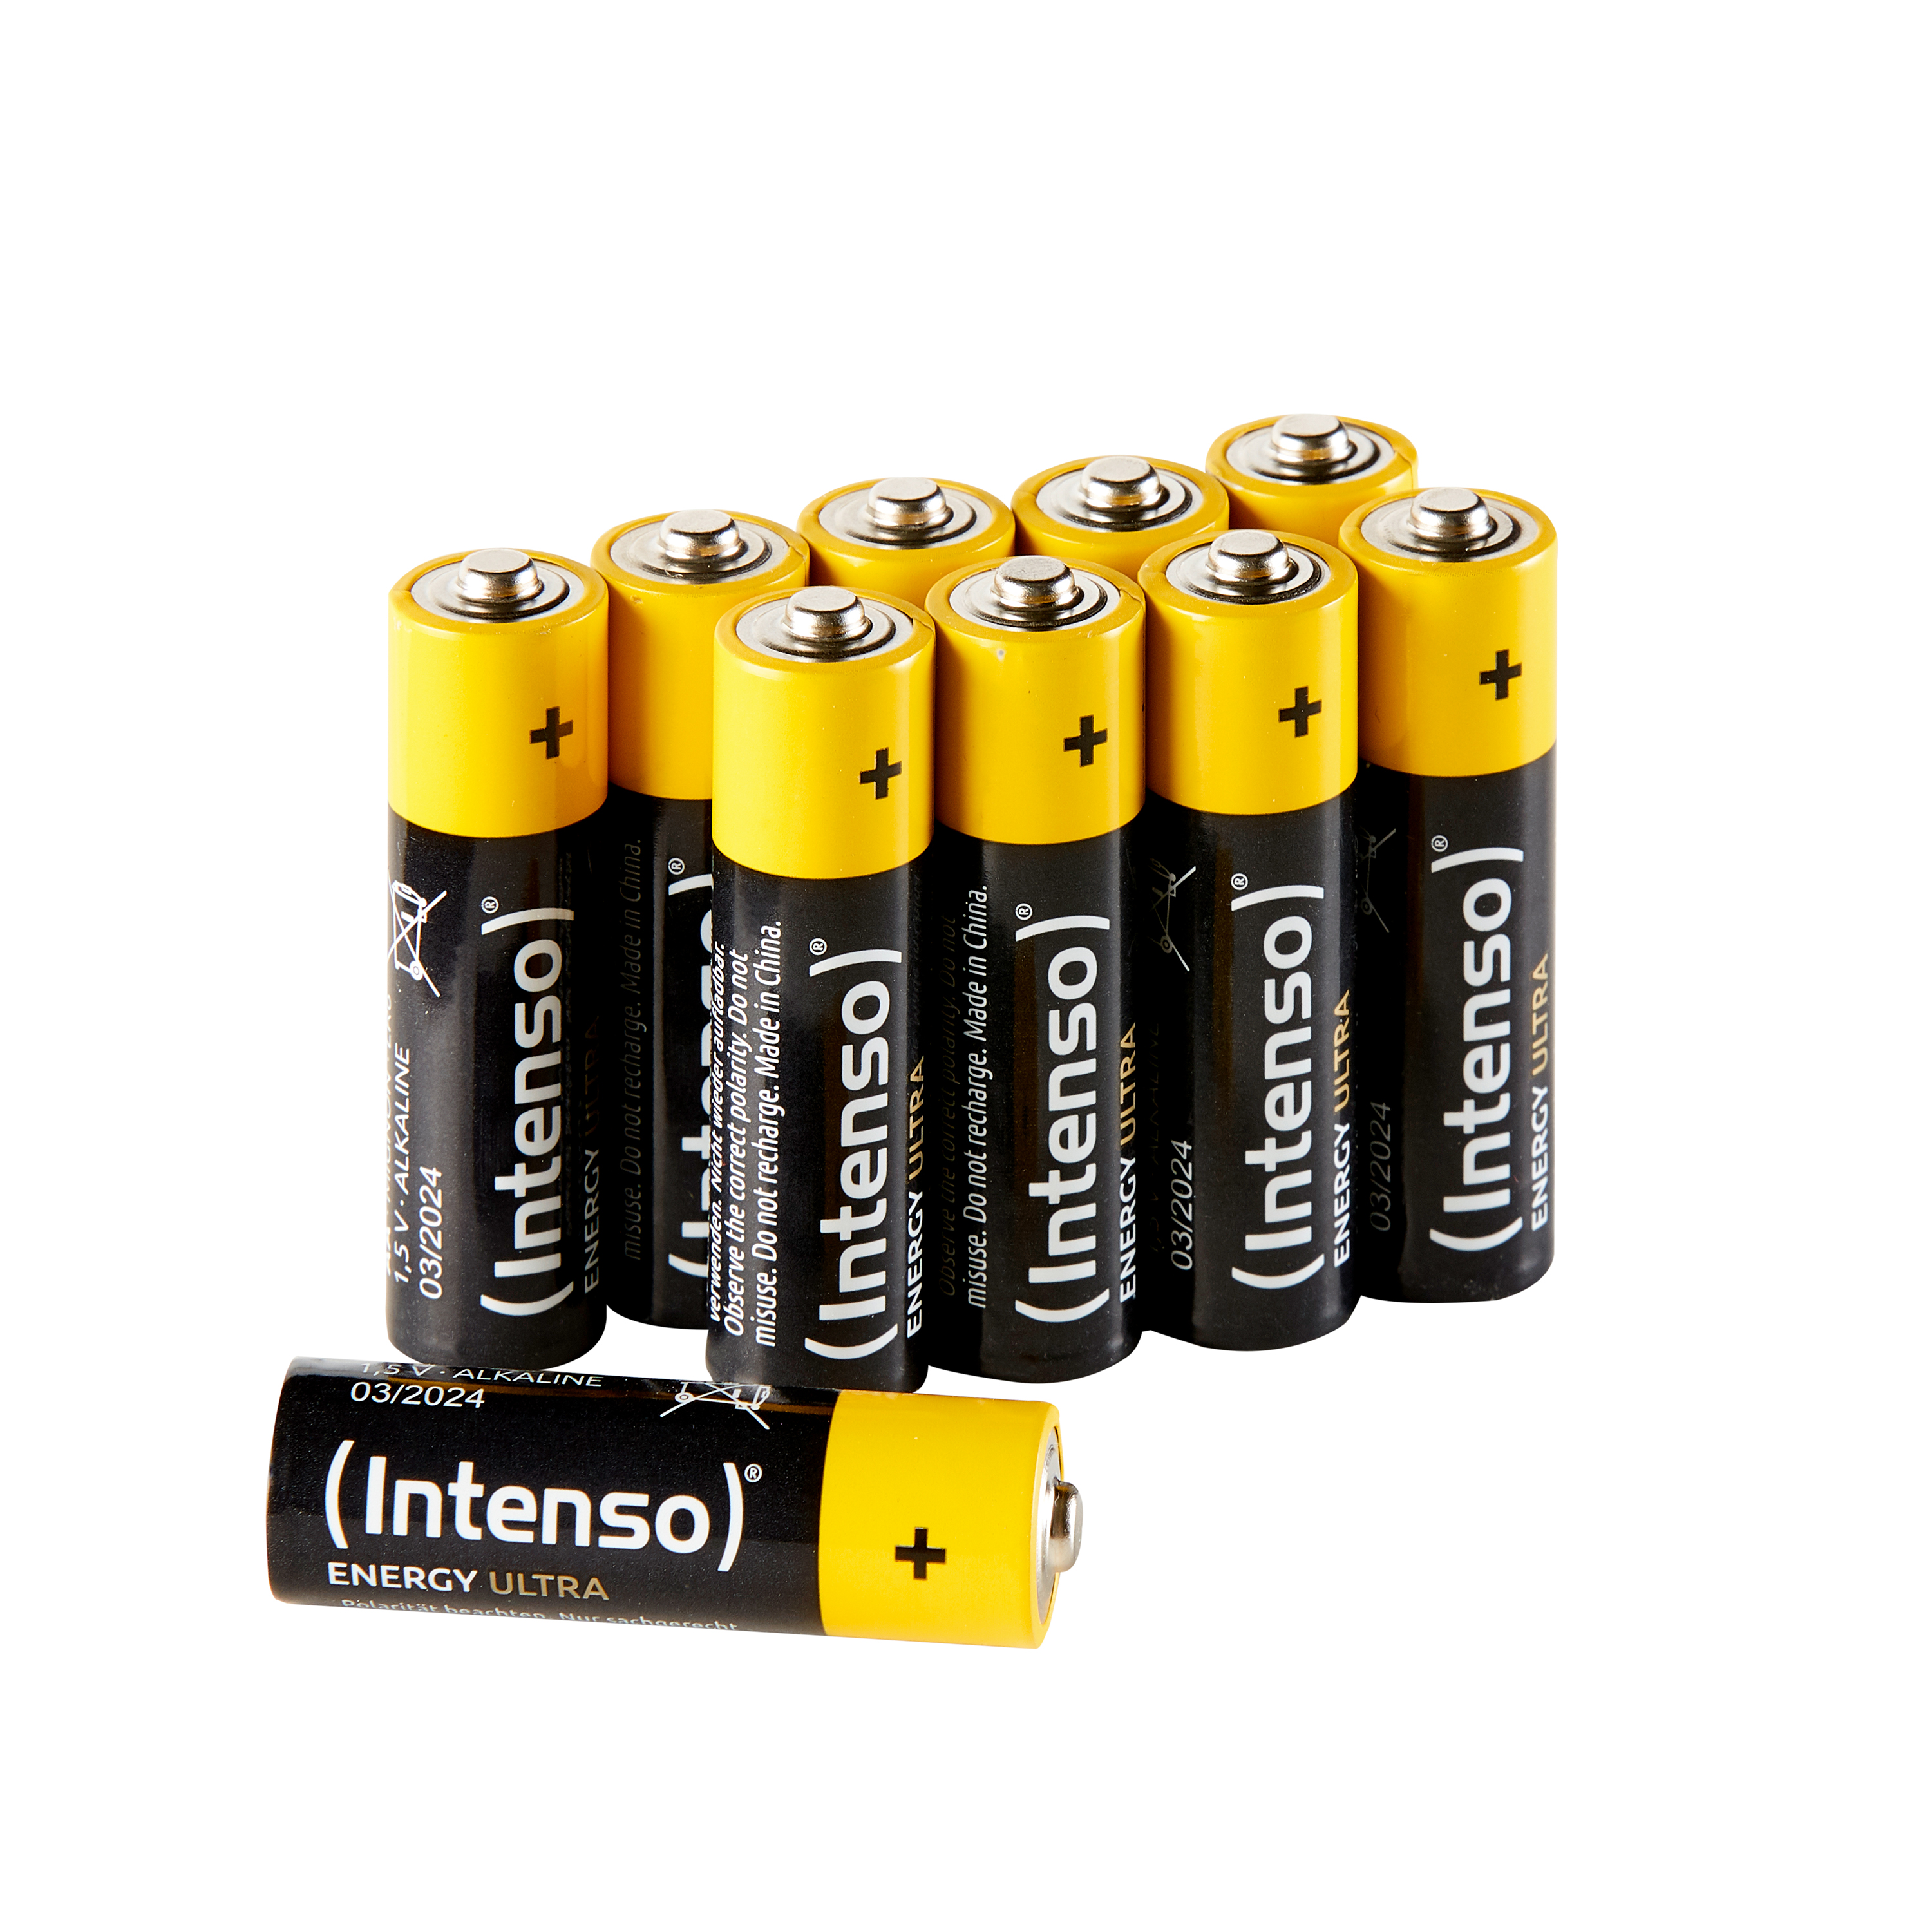 INTENSO Energy Batterie Pack Ultra LR6 AA 10er